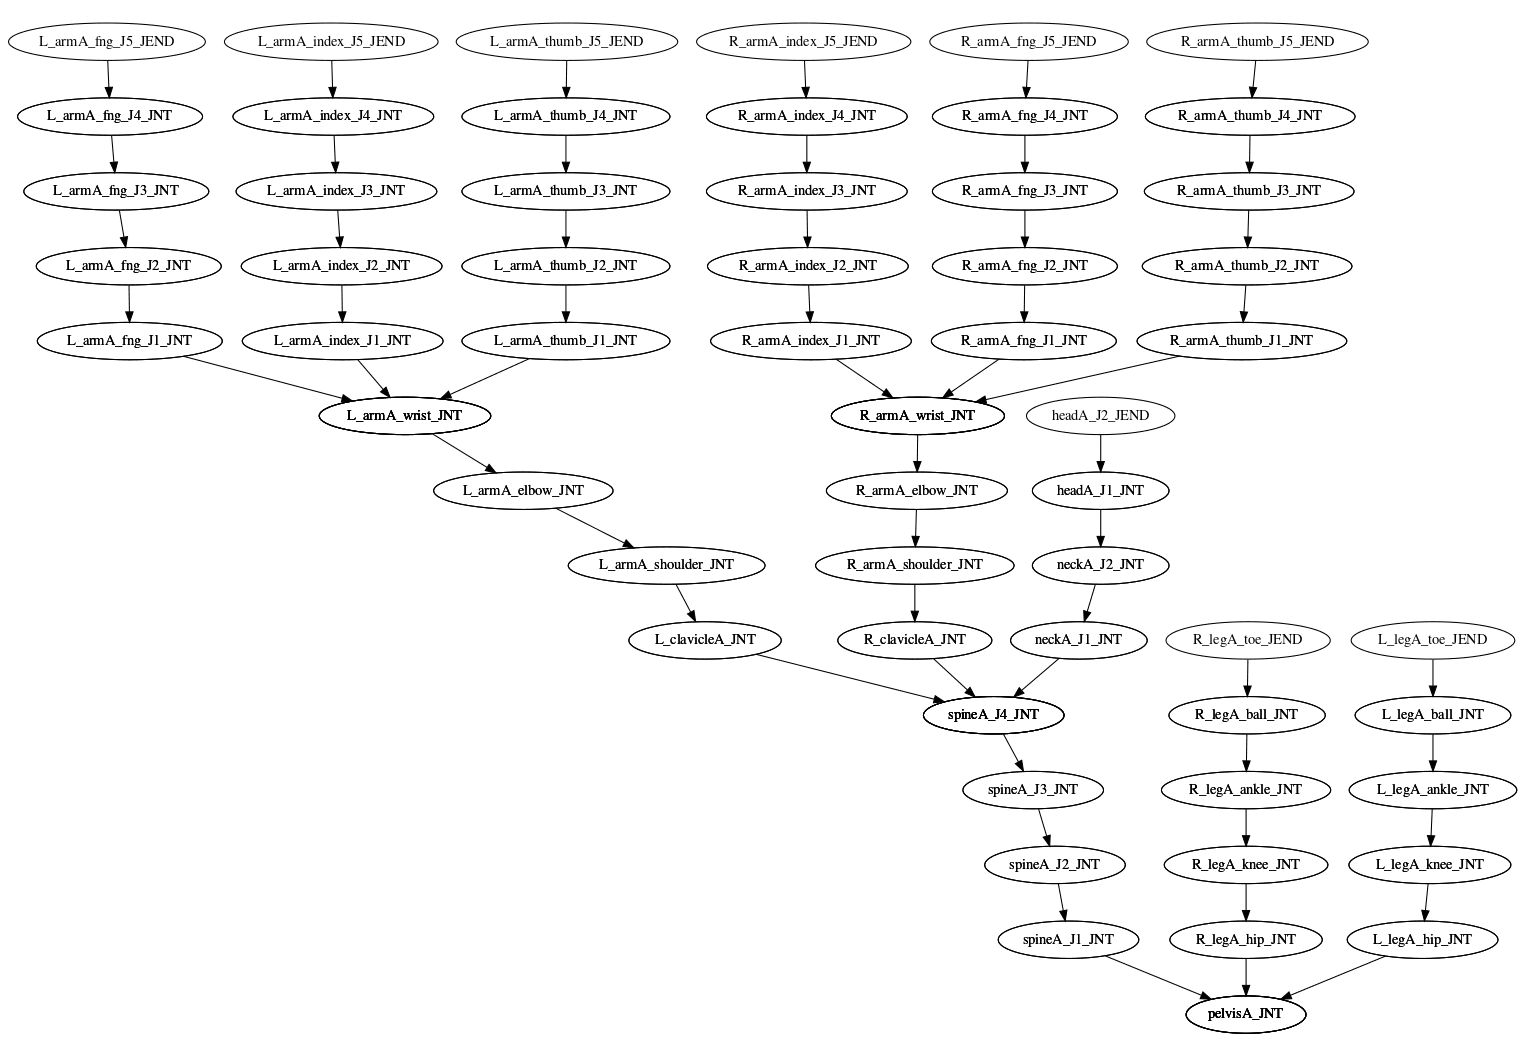 node hierarchy